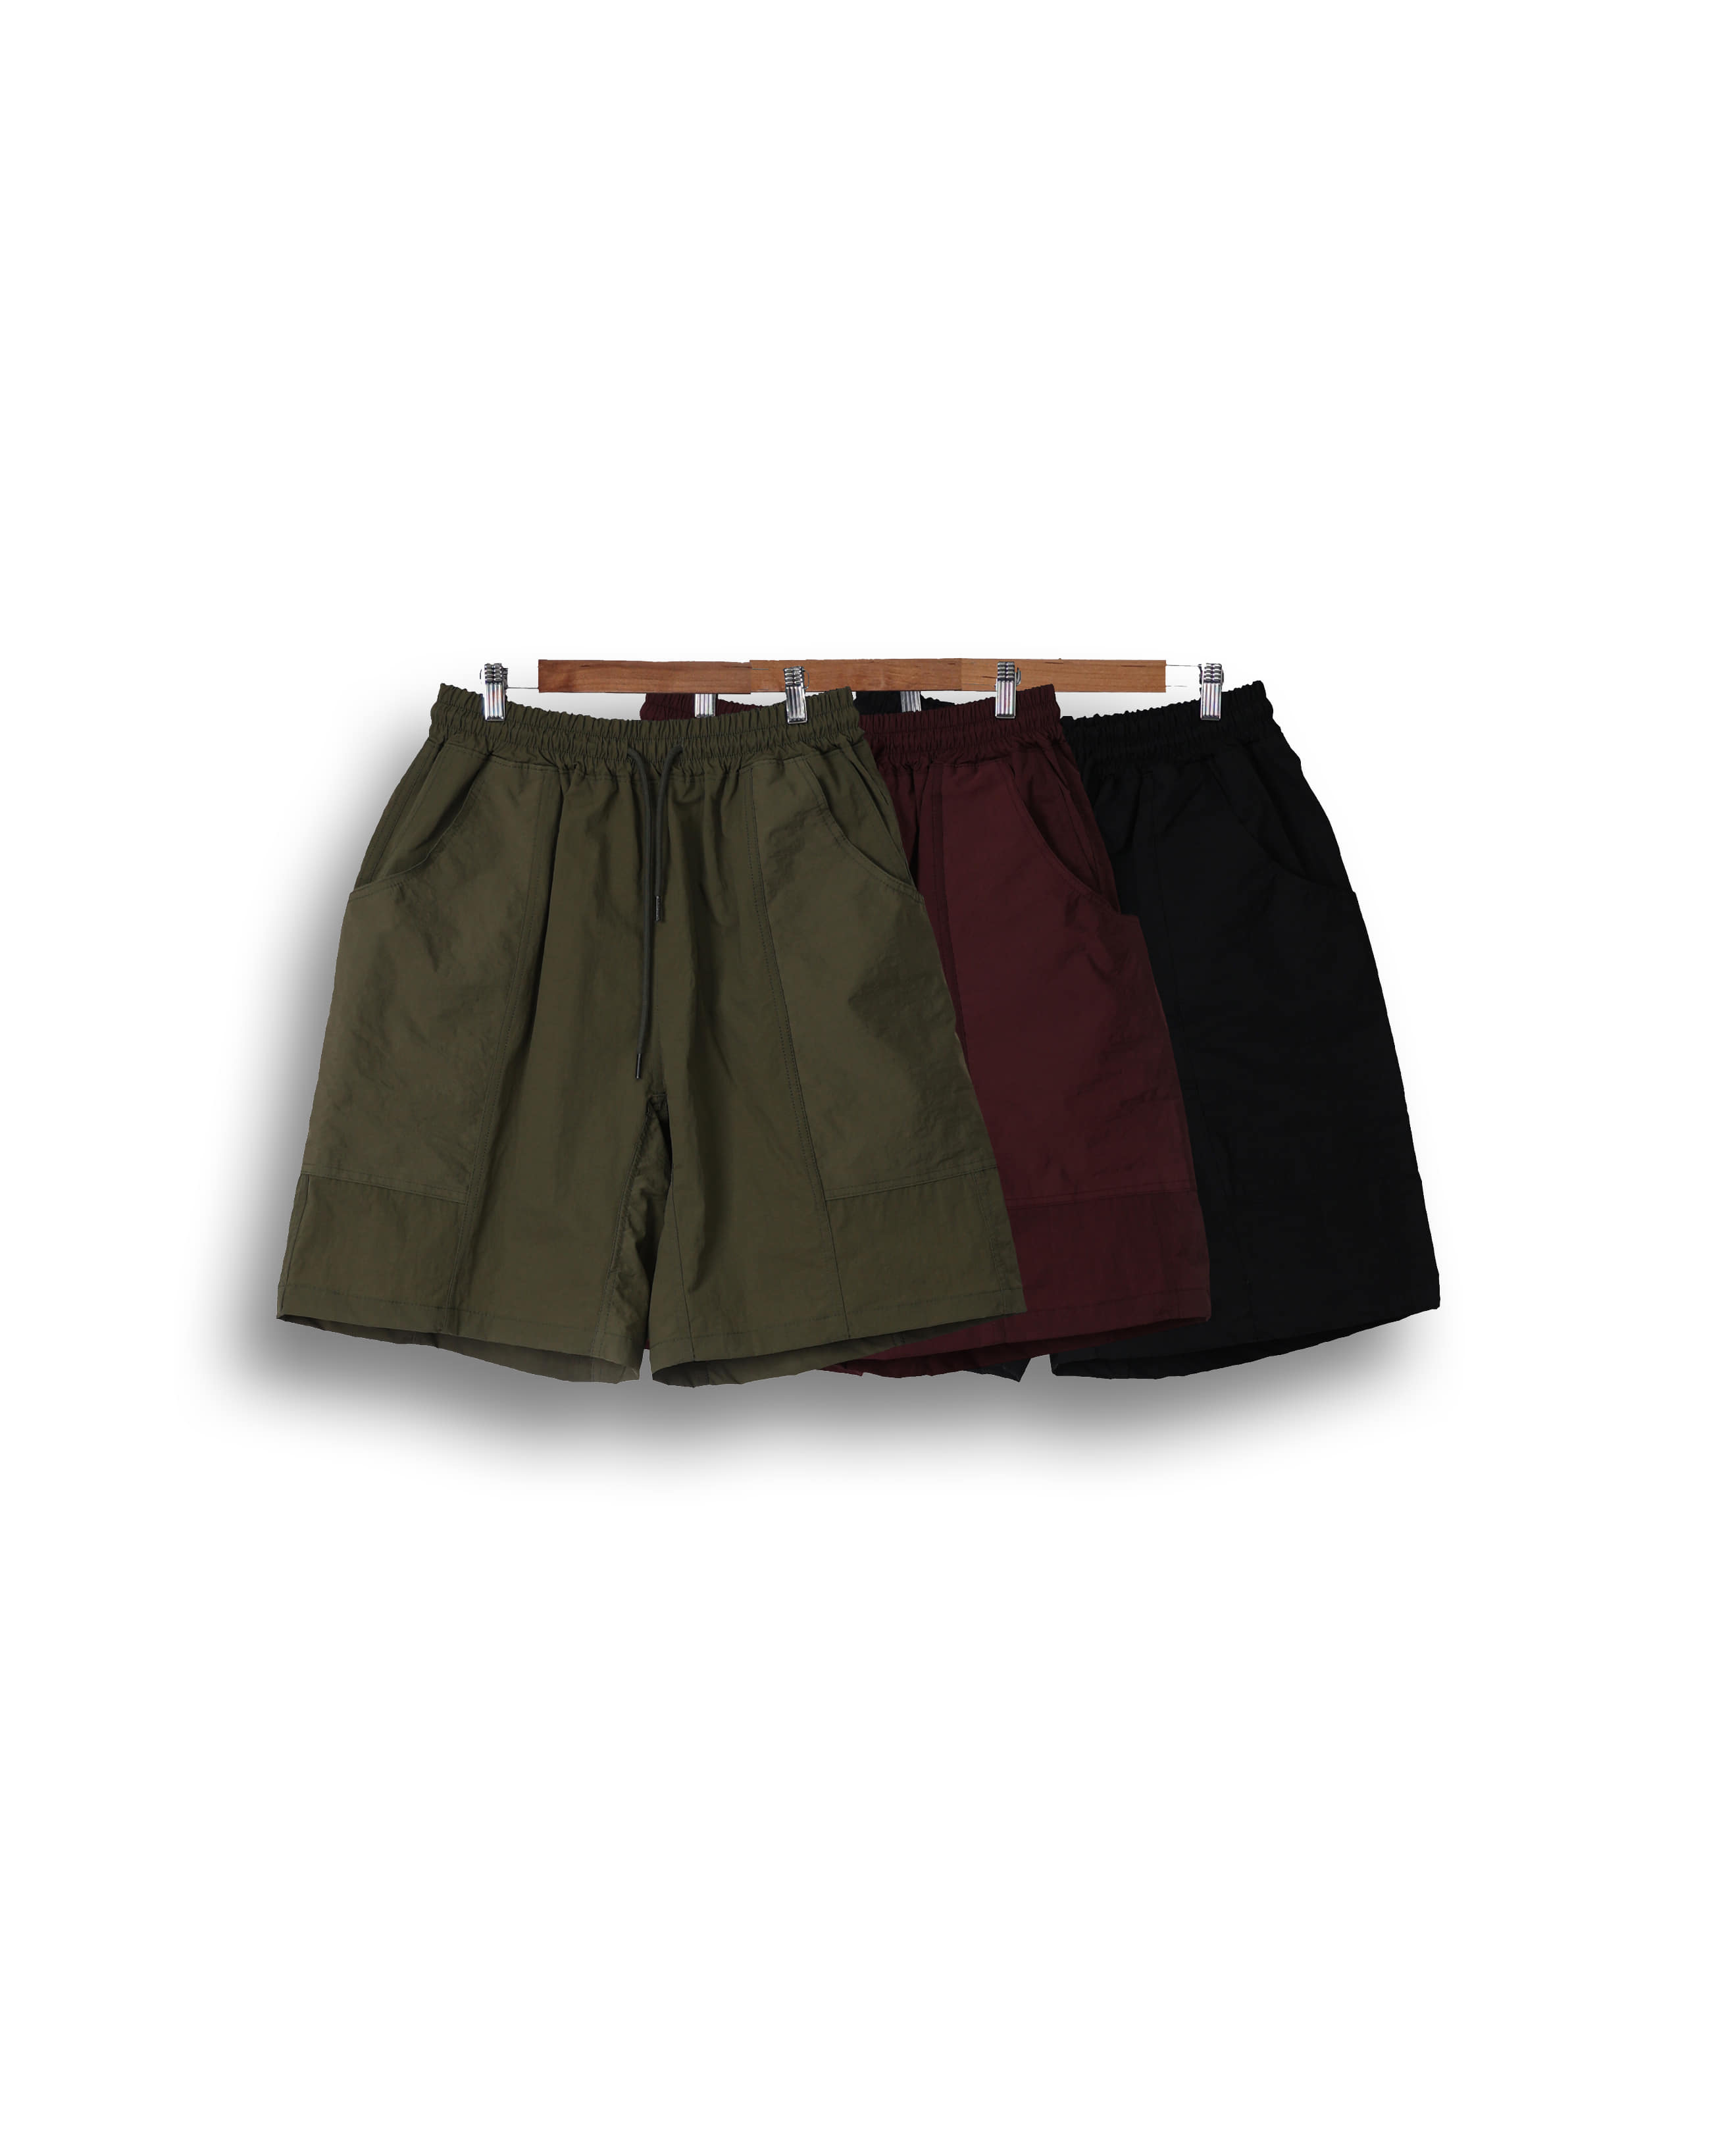 NEWOR Gusset Parted Nylon Shorts (Black/Wine/Khaki)